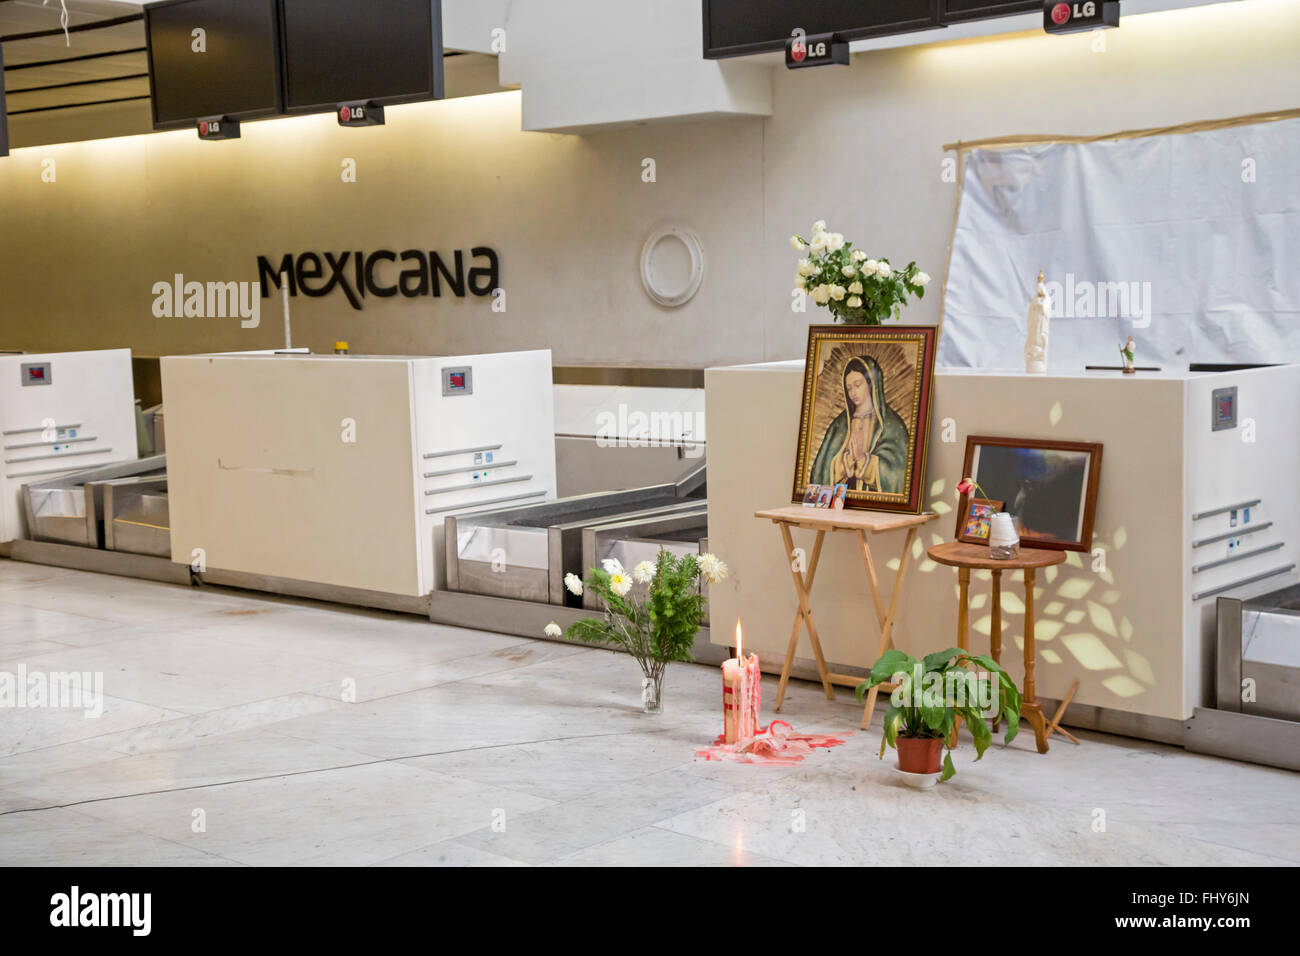 La ville de Mexico, D.F., Mexique - culte à l'aéroport Compagnies aériennes Mexicana frauduleux prétendument manifestations la faillite. Banque D'Images